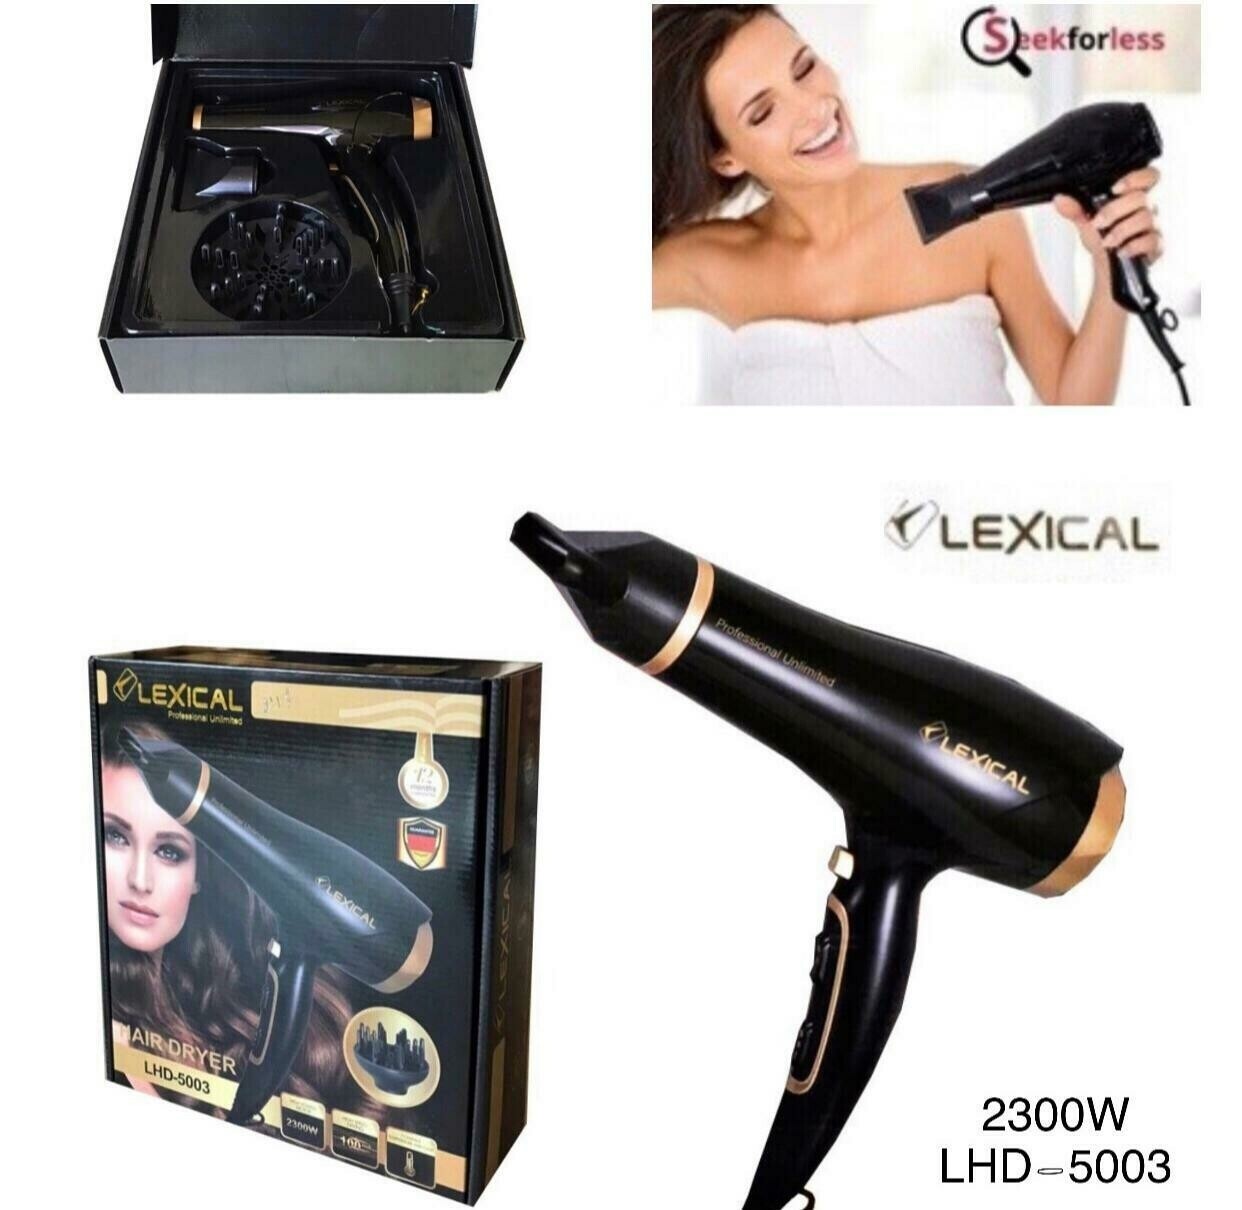 Hair Dryer (LHD-5003)